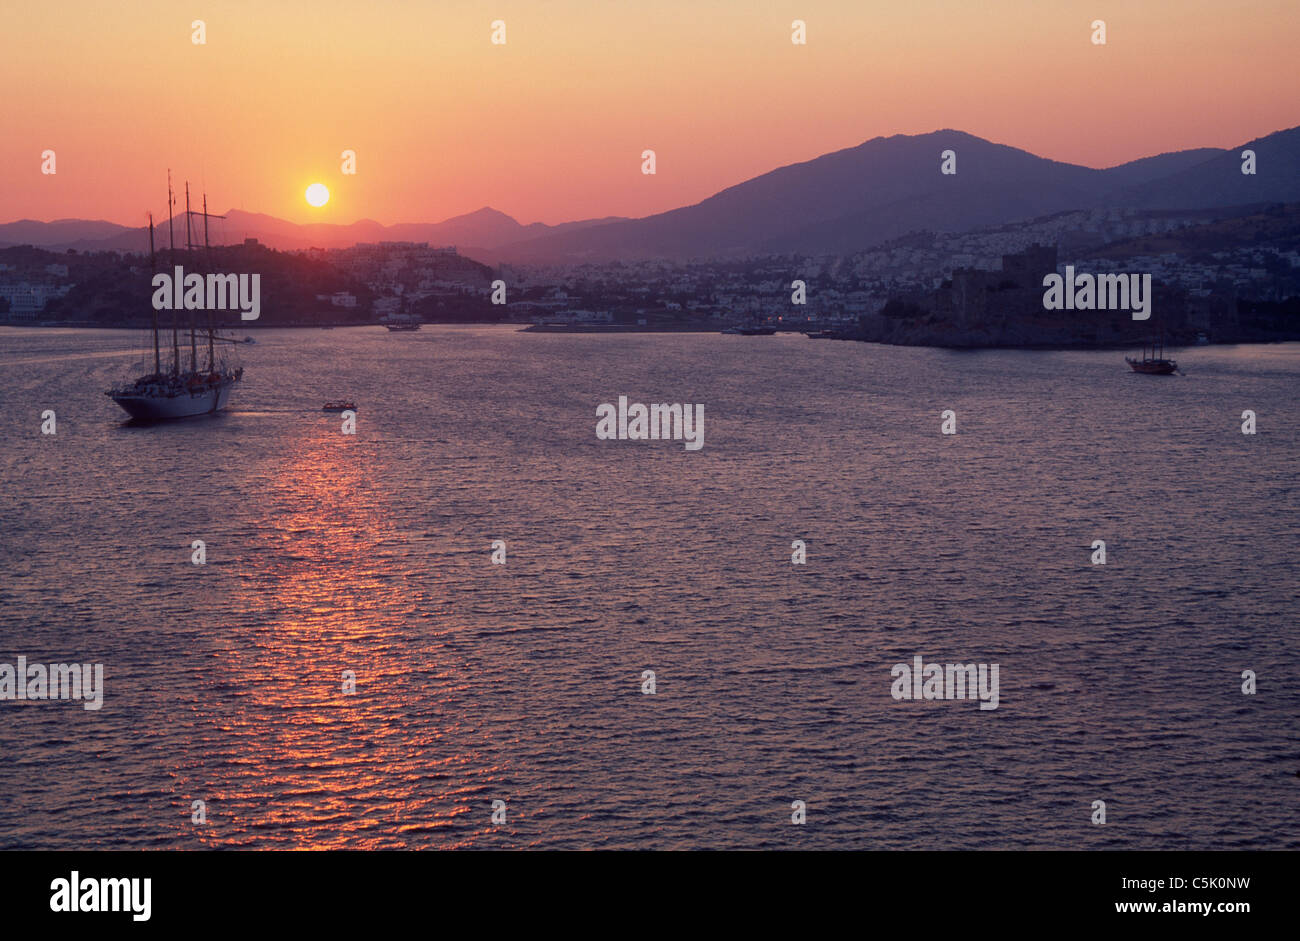 Passenger boat at sunset, Bodrum, Mugla, Turkey Stock Photo